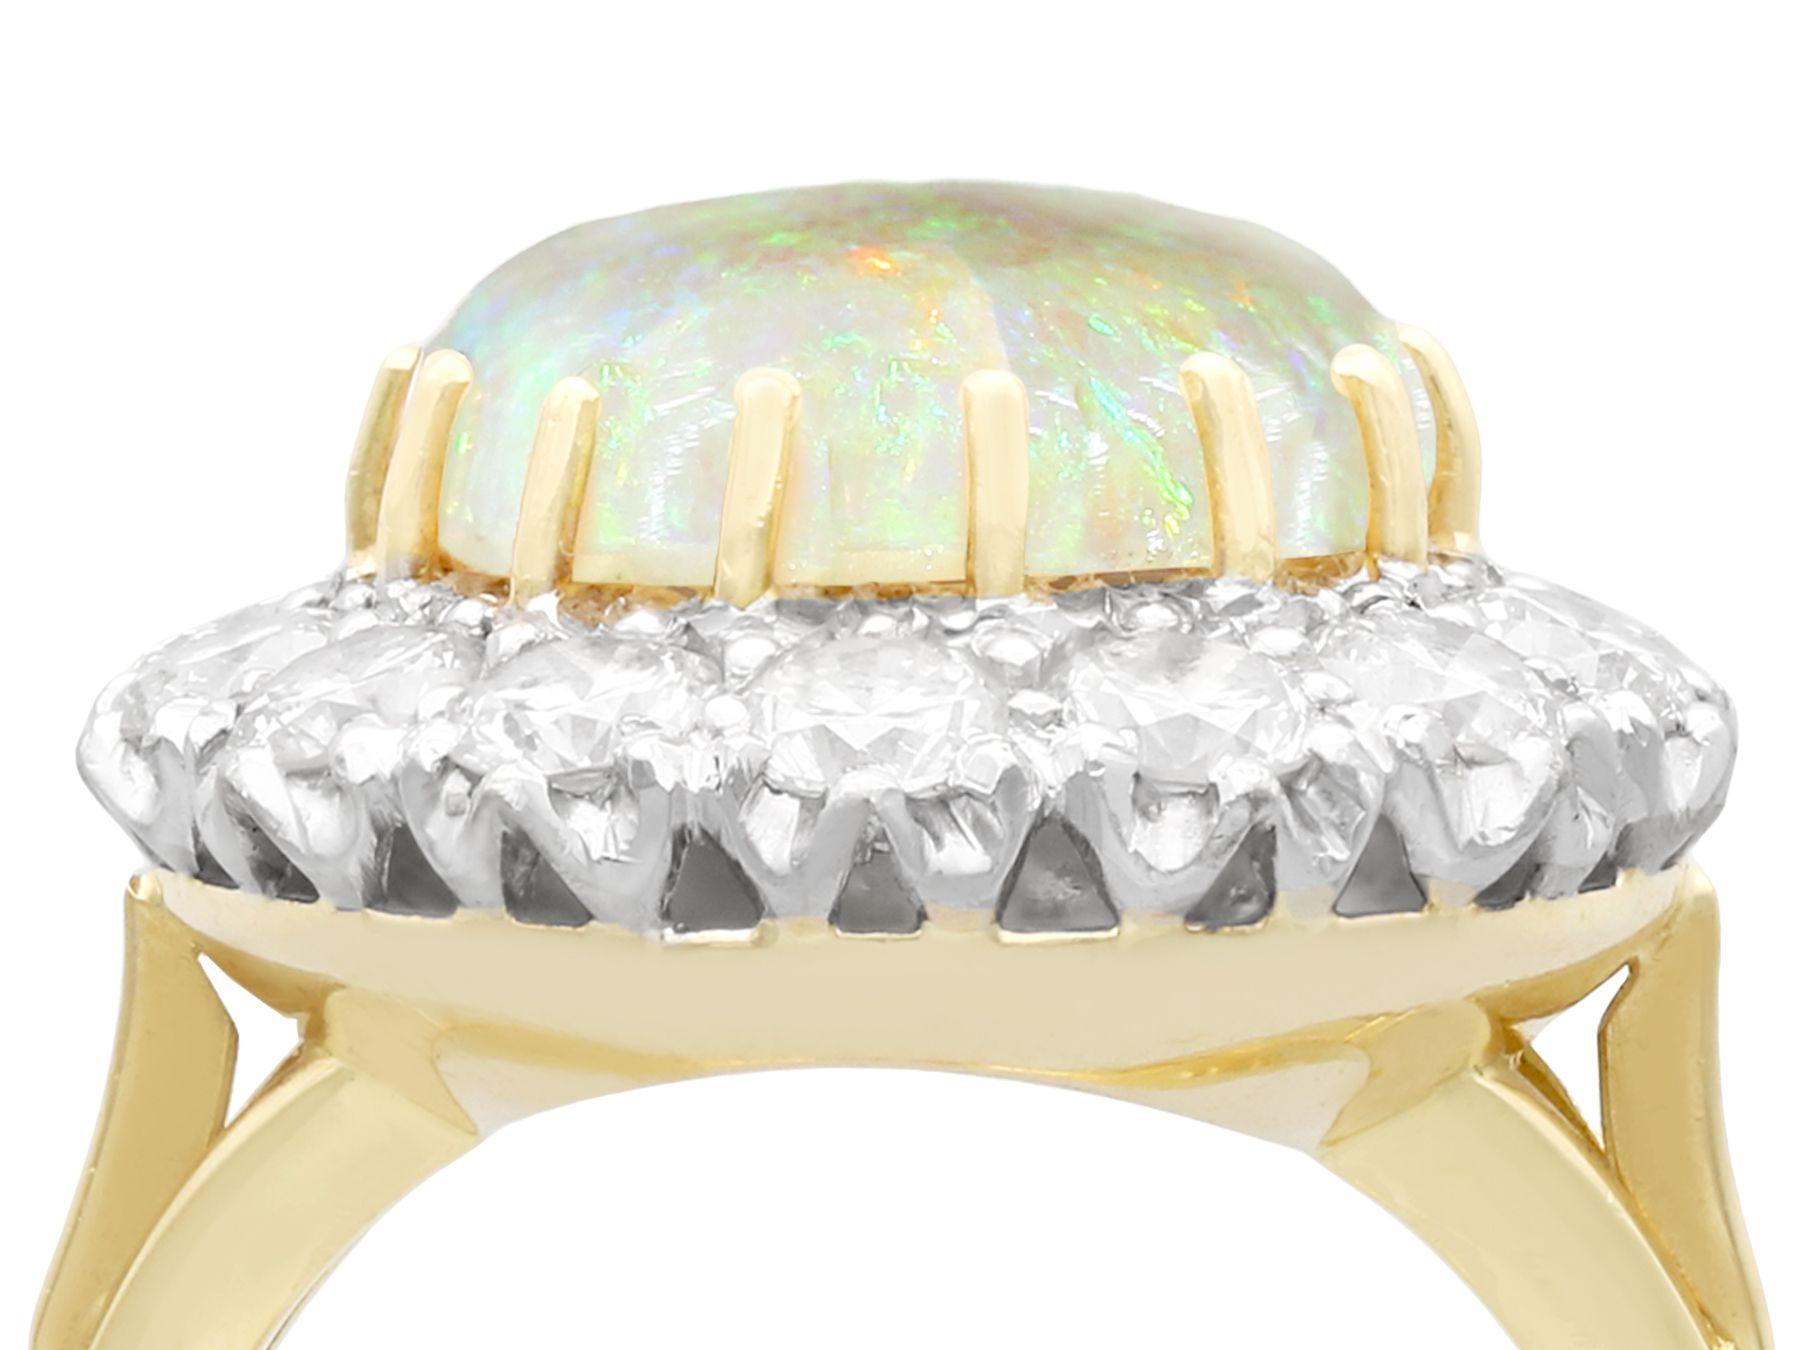 Ein atemberaubender Cocktailring mit 3,55 Karat weißem Opal und 2,68 Karat Diamanten, besetzt mit 18 Karat Gelbgold und 18 Karat Weißgold; Teil unserer vielfältigen Opalschmuck-Kollektion.

Dieser atemberaubende, feine und beeindruckende Ring mit